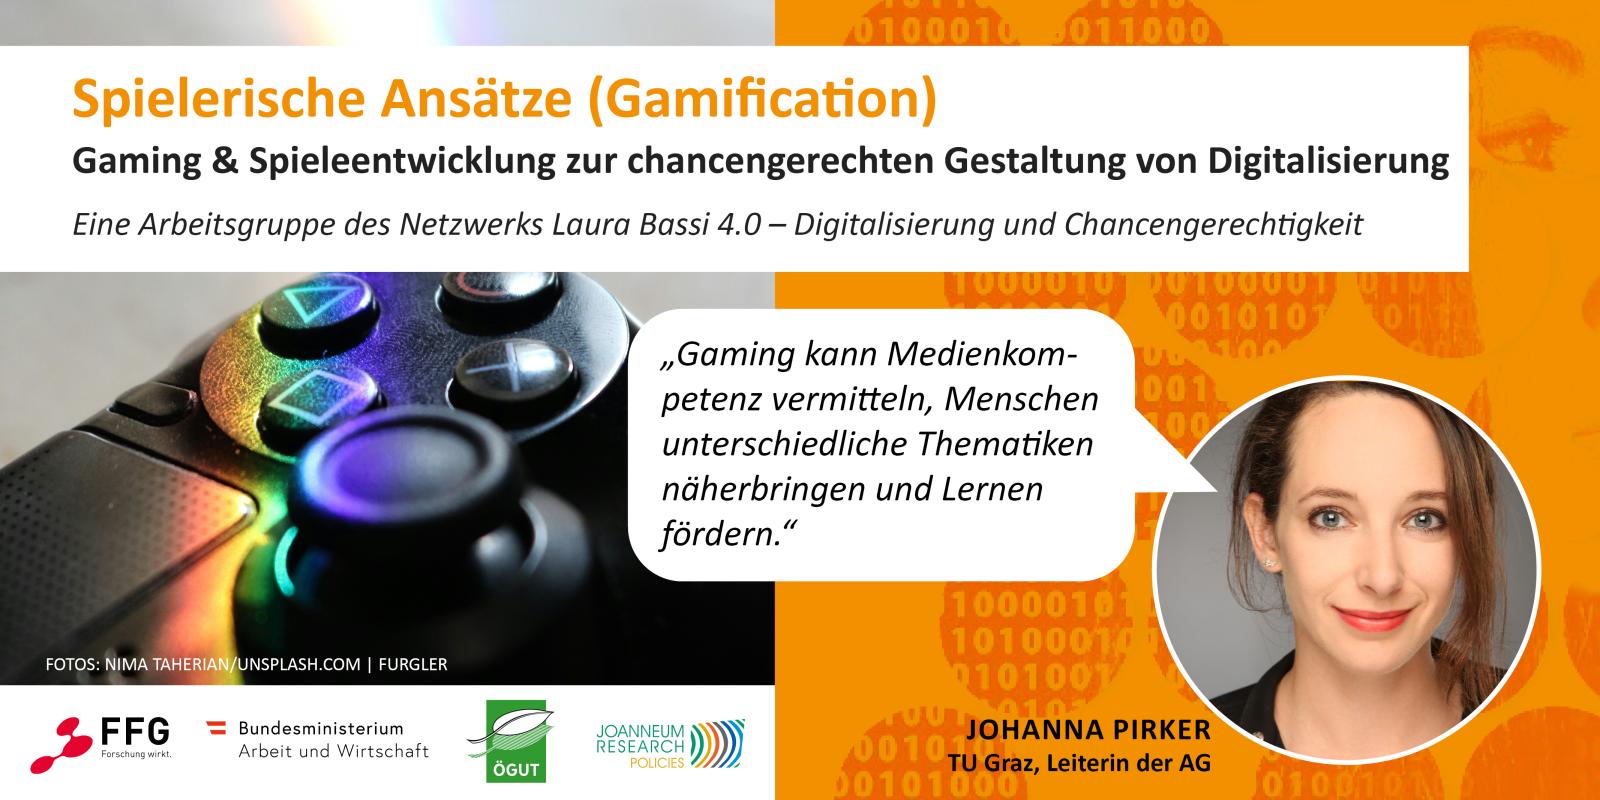 Sujet der Arbeitsgruppe „Spielerische Ansätze (Gamification)“ und ein Portraitfoto der Arbeitsgruppen-Leiterin Johanna Pirker. Sie sagt: „Gaming kann Medienkompetenz vermitteln, Menschen unterschiedliche Thematiken näherbringen und Lernen fördern.“